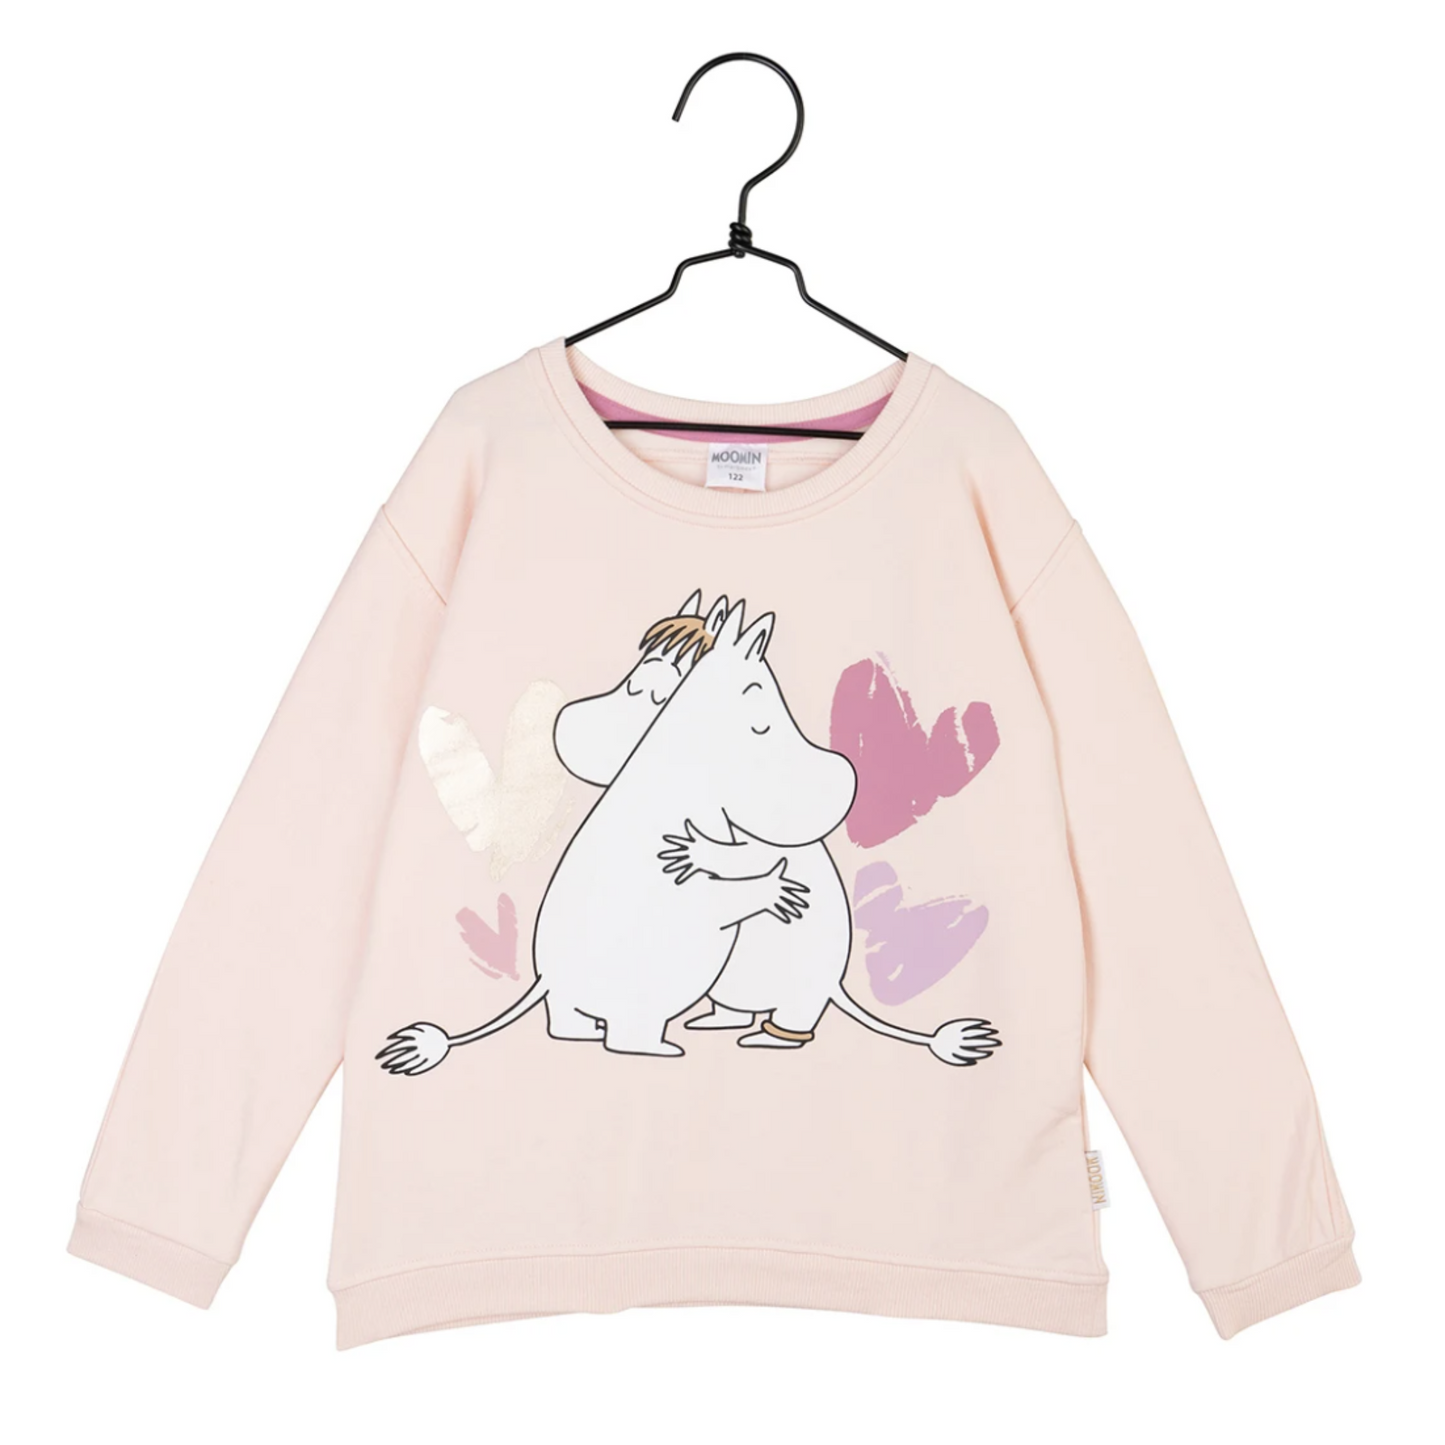 Moomin Kid's Sweatshirt, Heart (8366303543583)